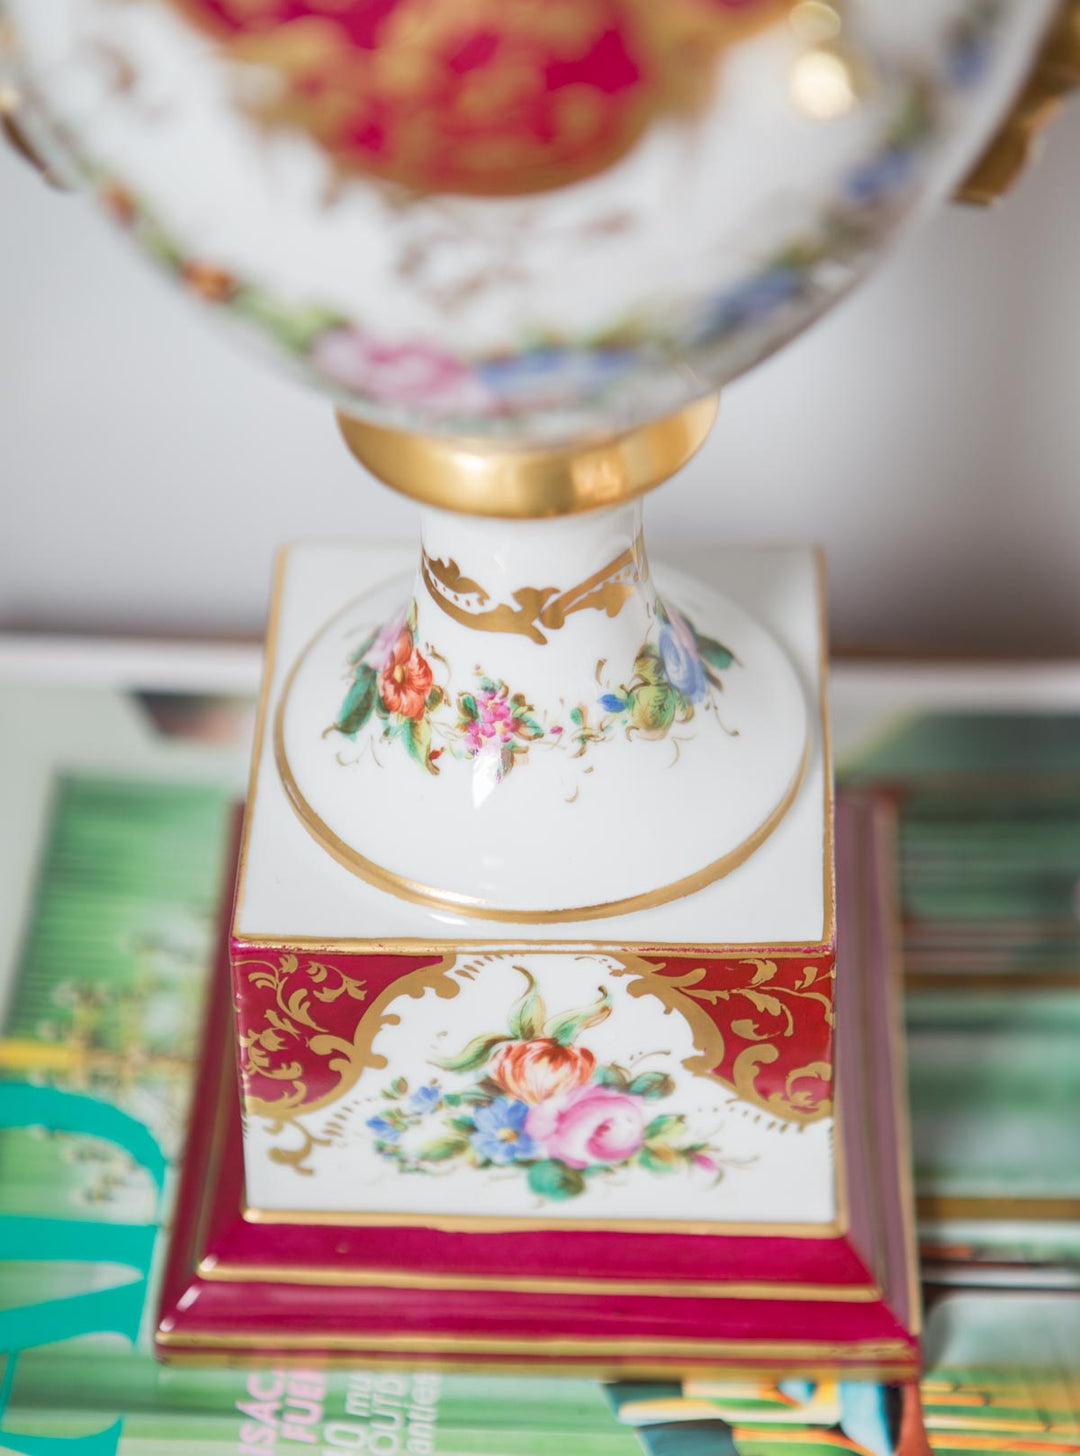 Antigua lámpara mesa porcelana Vieux Paris (VENDIDA)